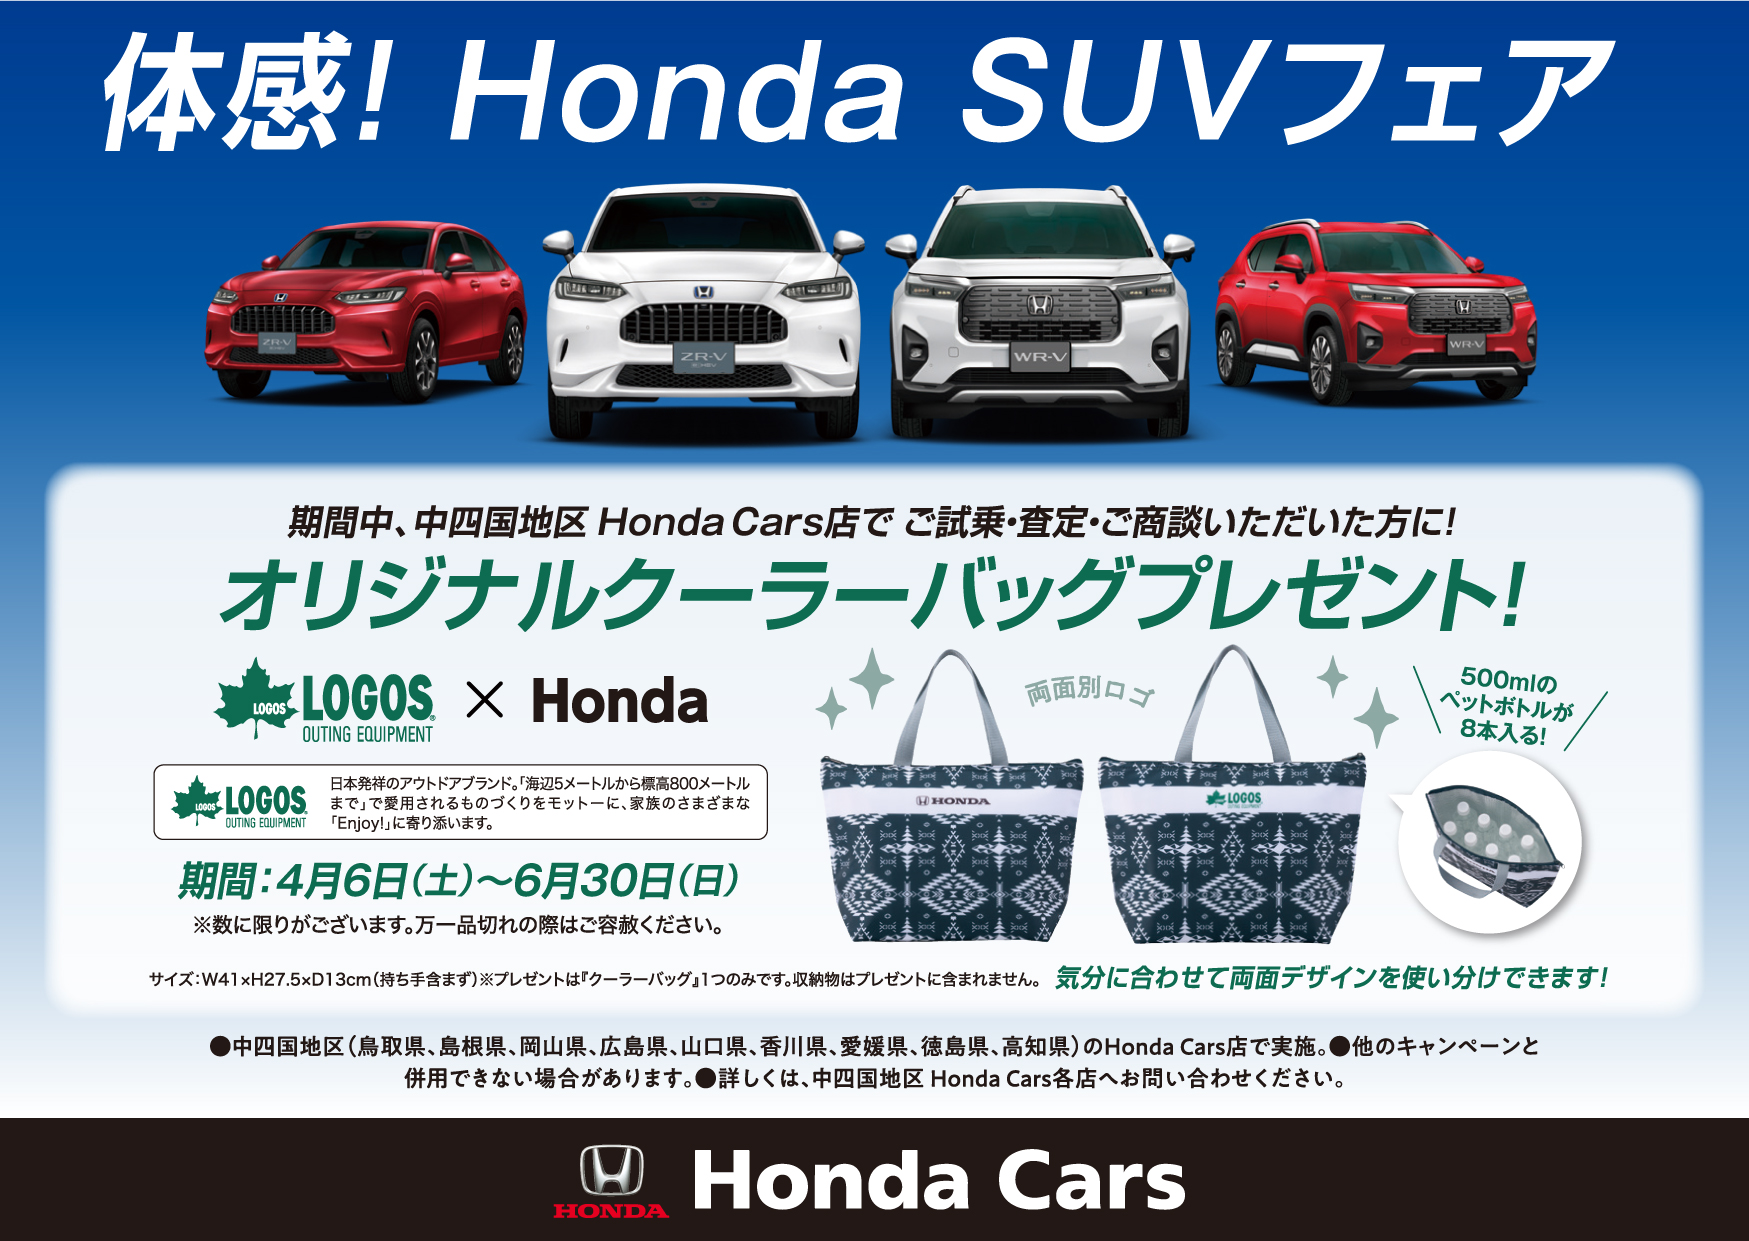 体感！Honda SUVフェア 期間中、中四国地区Honda Cars店でご試乗・査定・商談いただいた方にオリジナルクーラーバッグプレゼント！ 期間：4月6日(土)～6月30日(日)